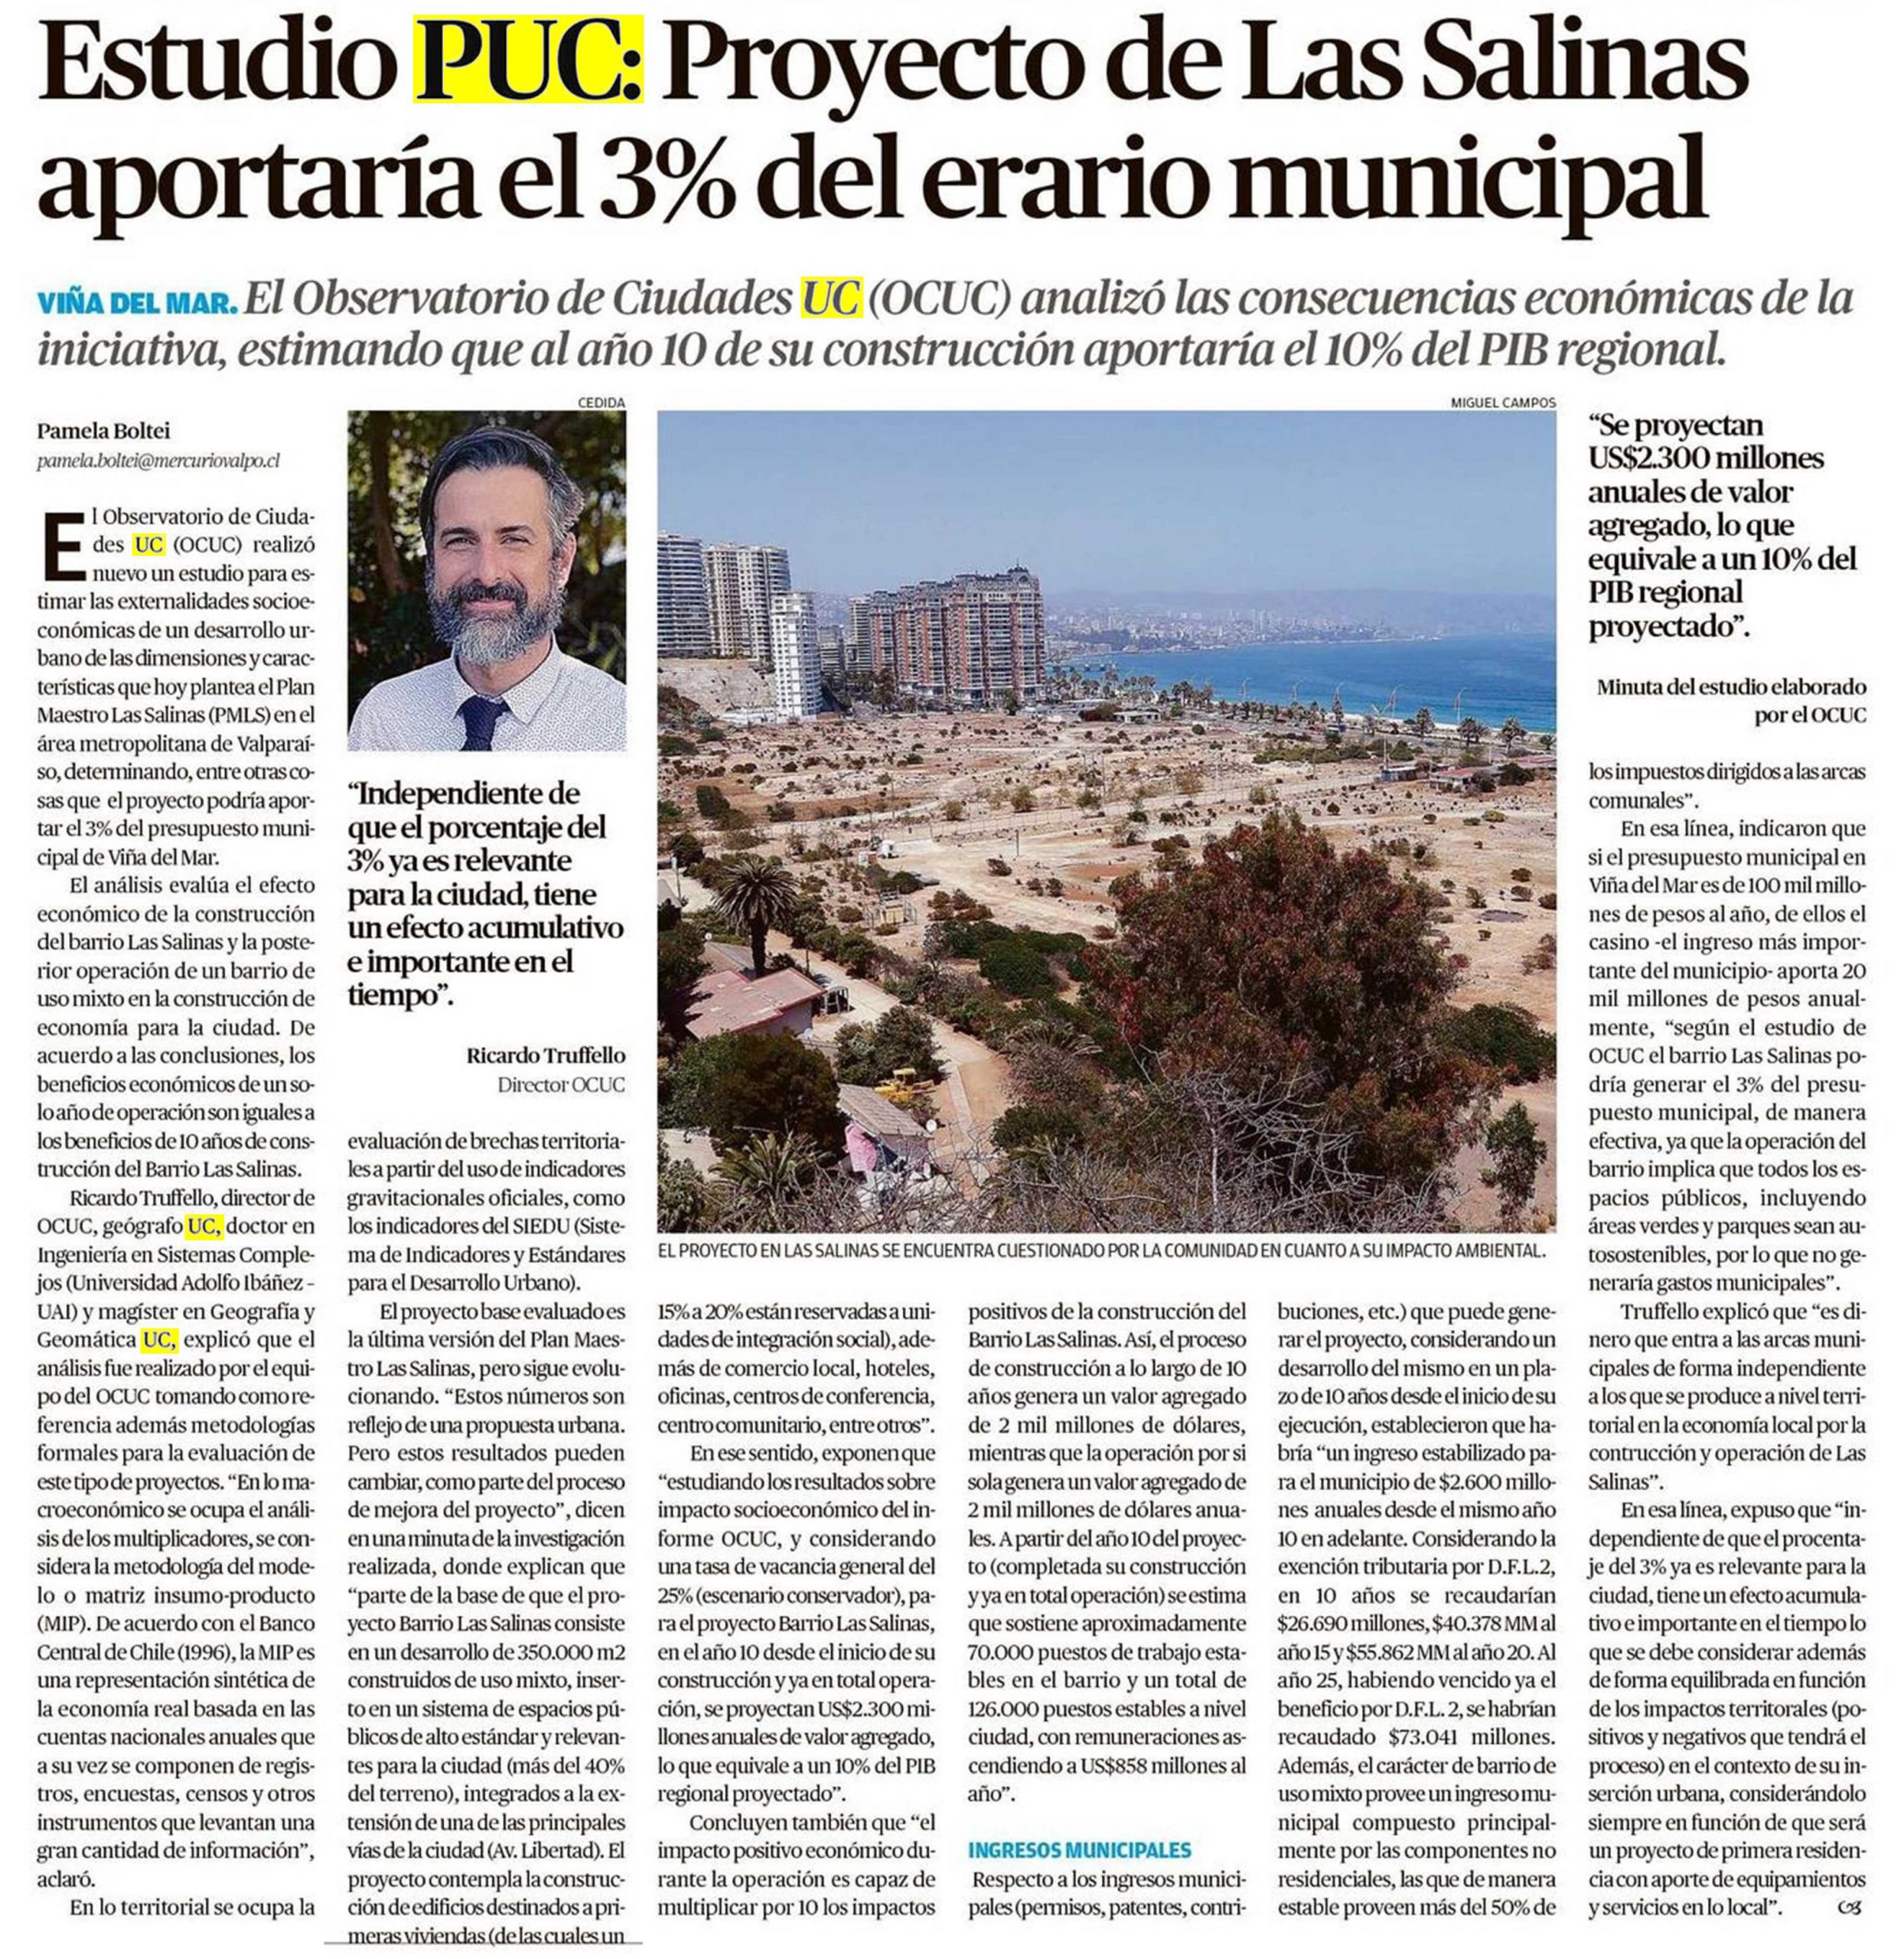 (El Mercurio Valparaíso) Estudio PUC: Proyecto de Las Salinas aportaría el 3% del erario municipal